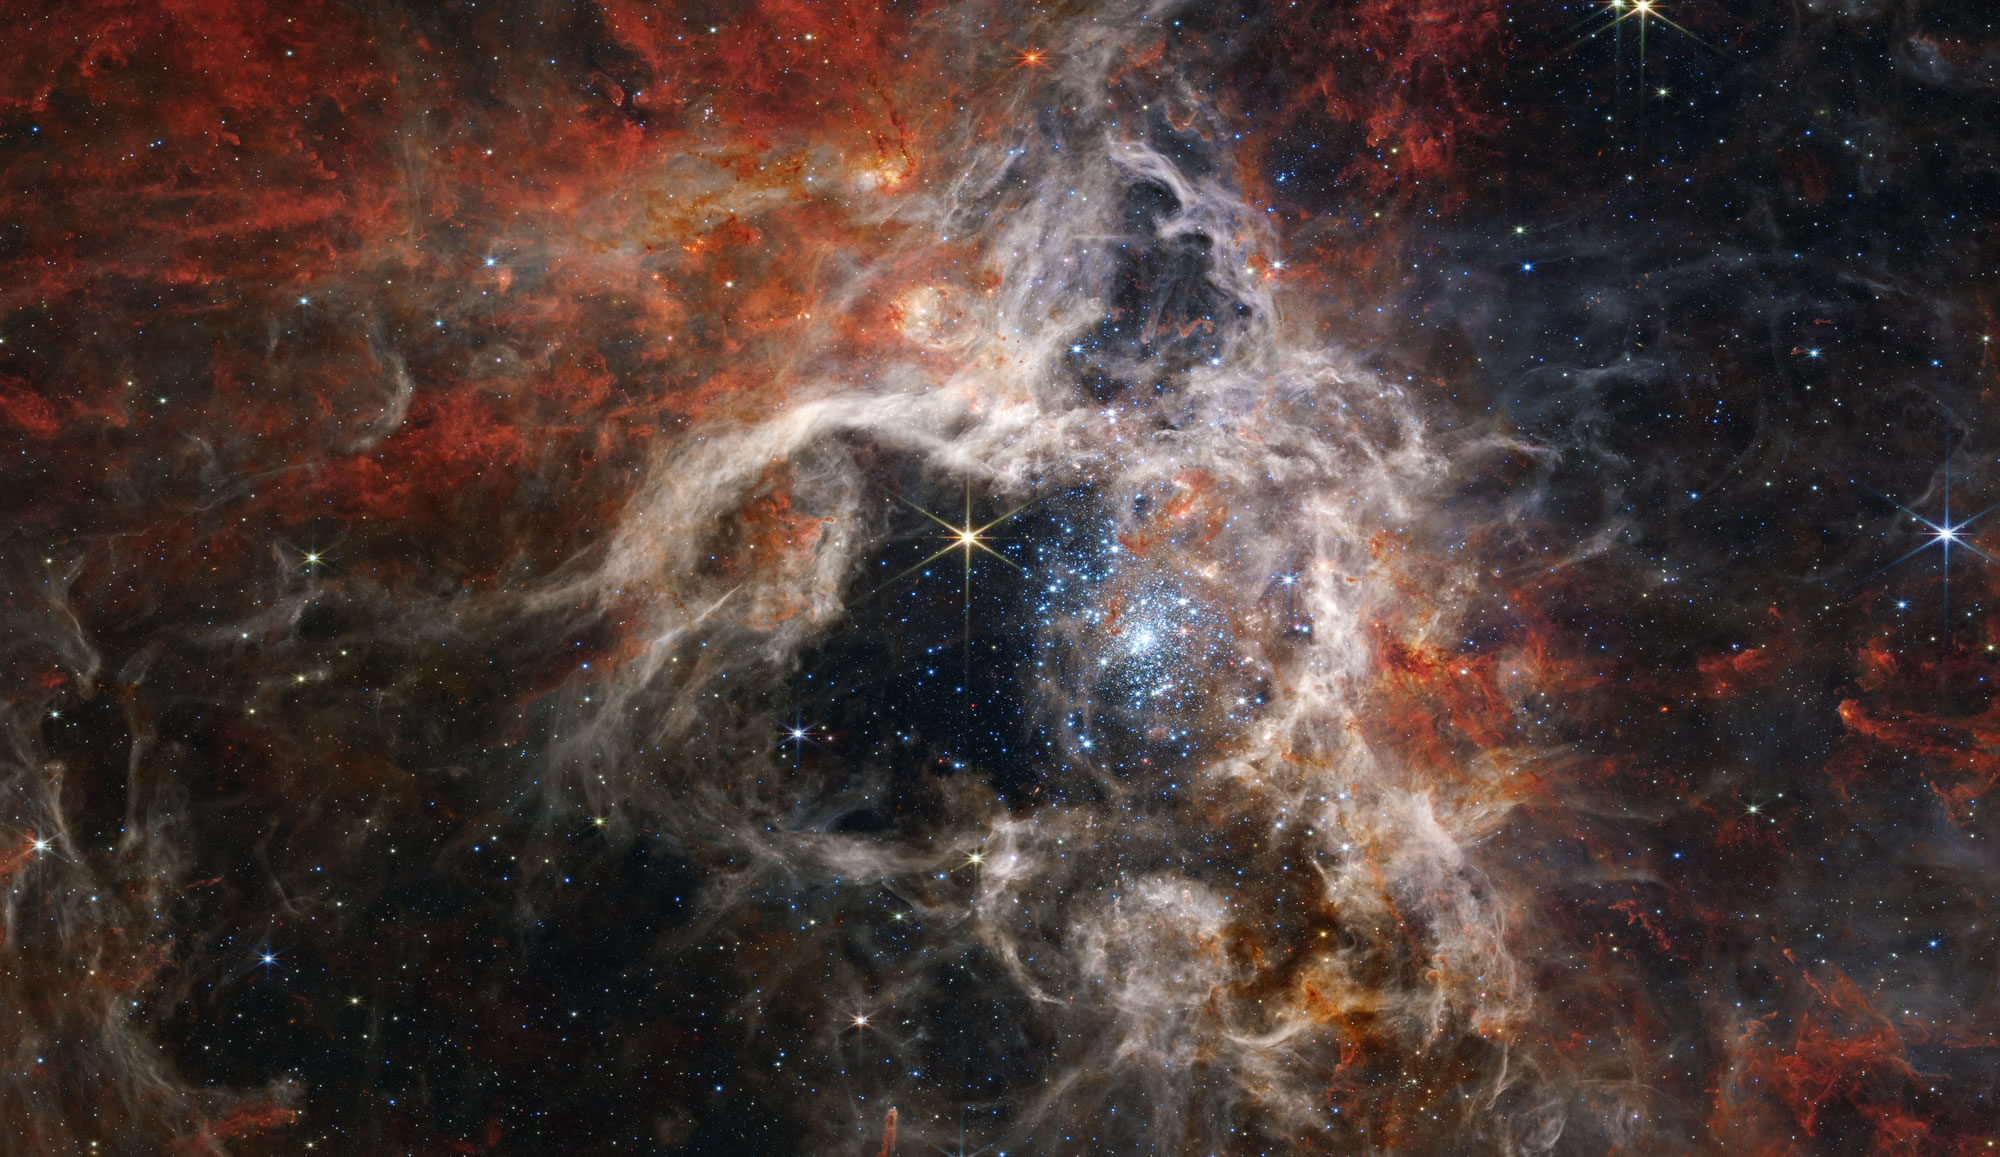 La région de formation stellaire massive 30 Doradus dans le Grand Nuage de Magellan.